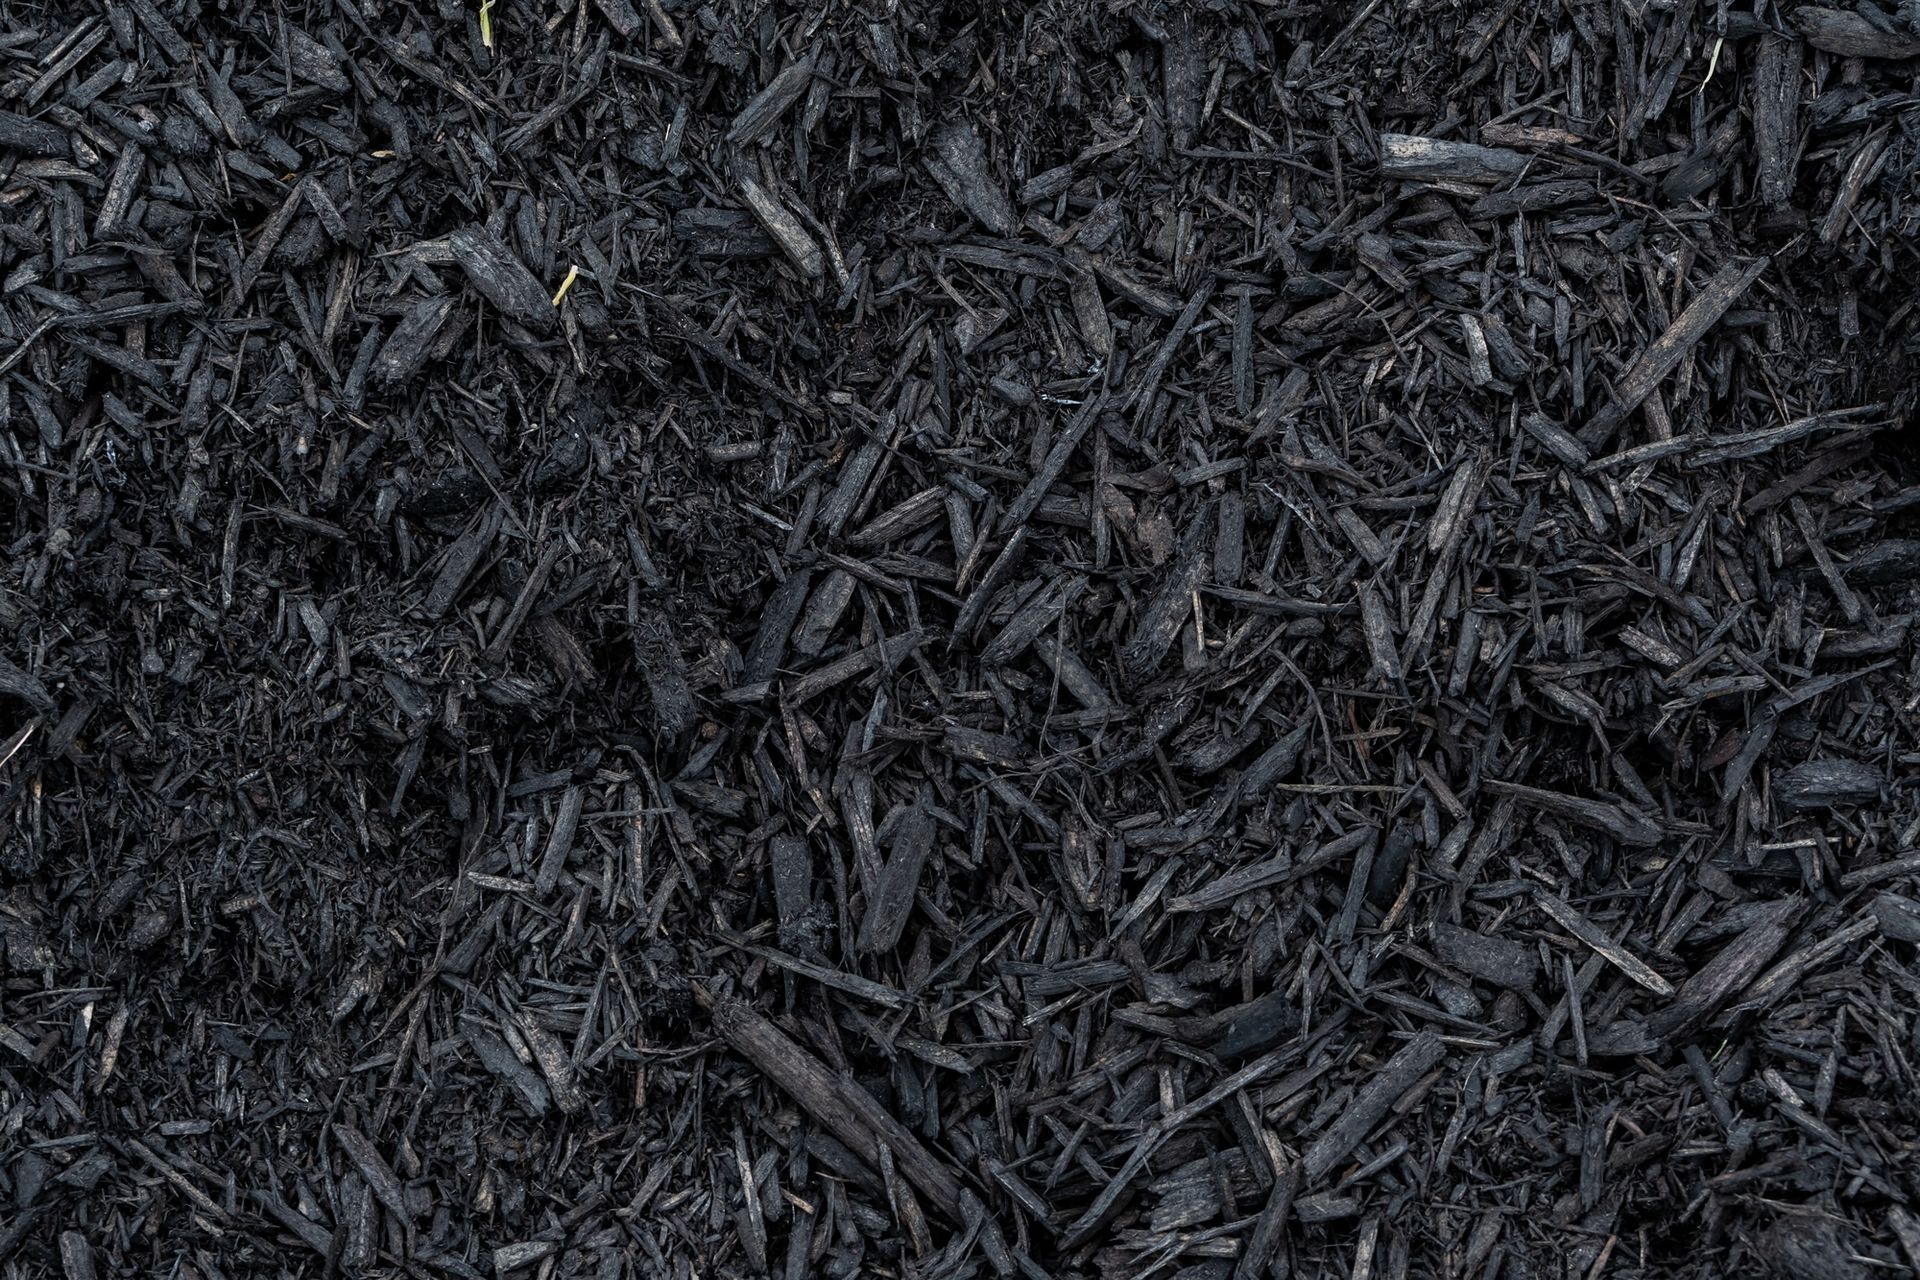 dark mulch chips in focus